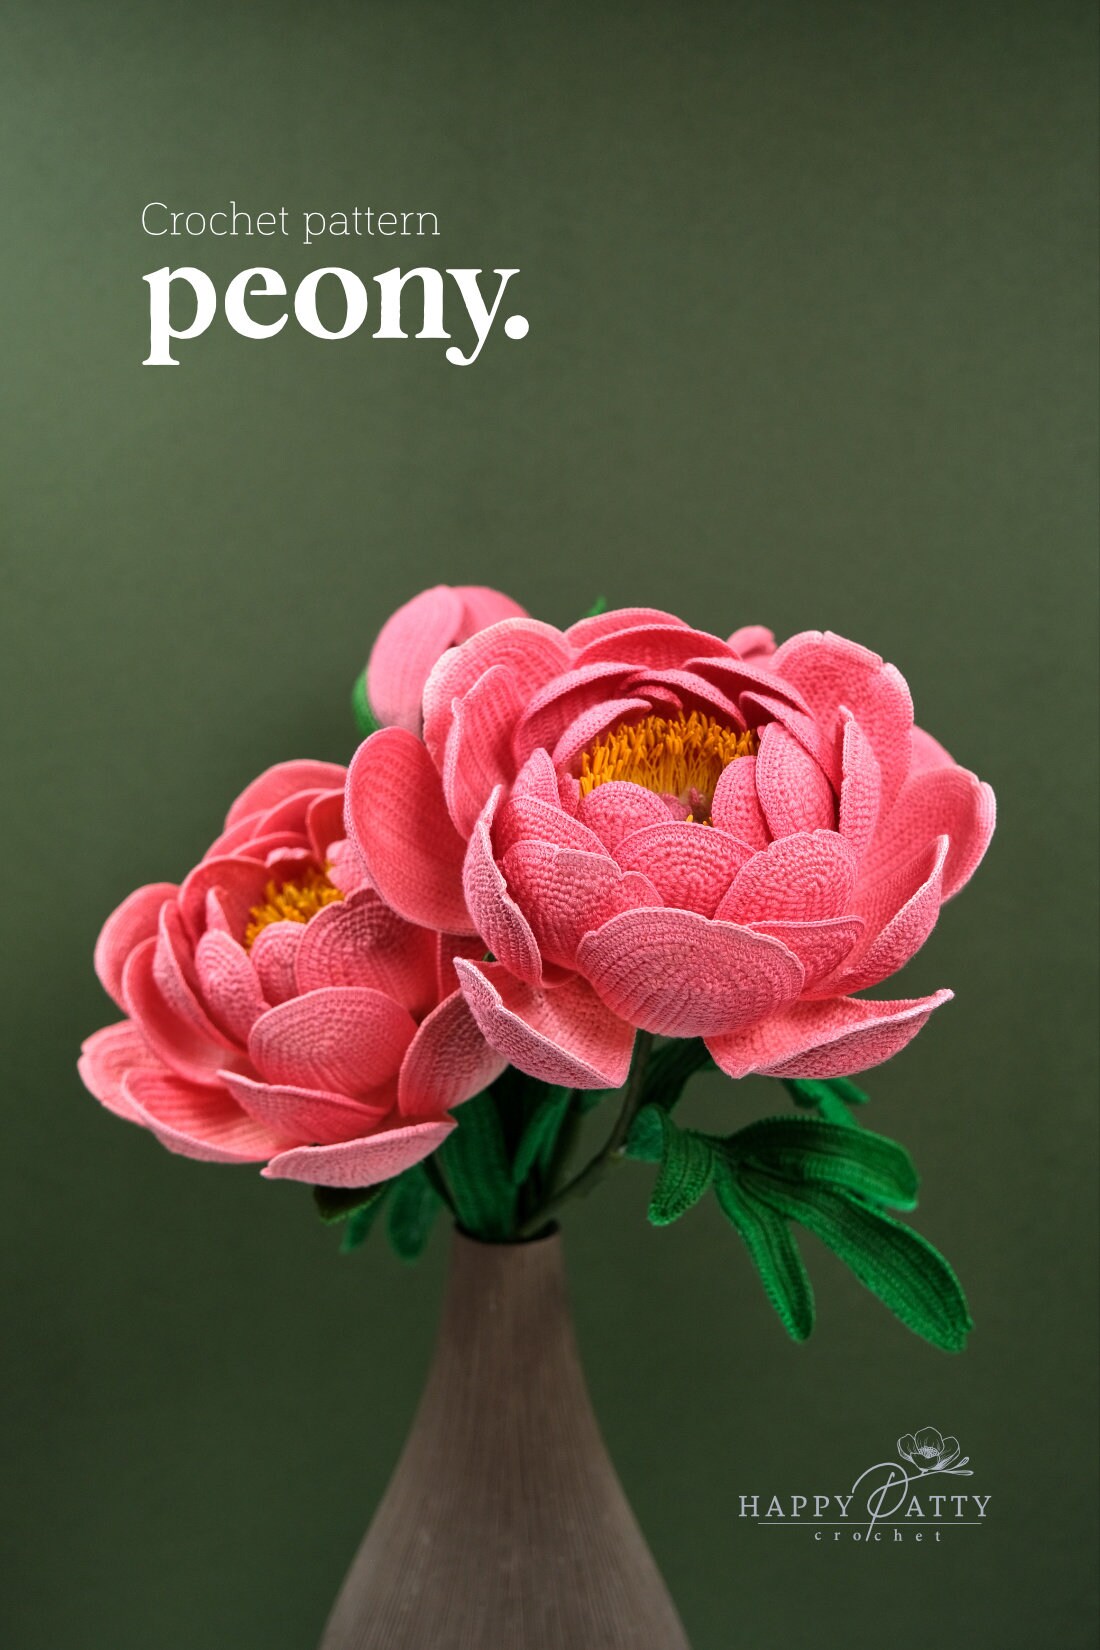 Crochet Peony Pattern - Crochet Flower Pattern for a Peony Flower